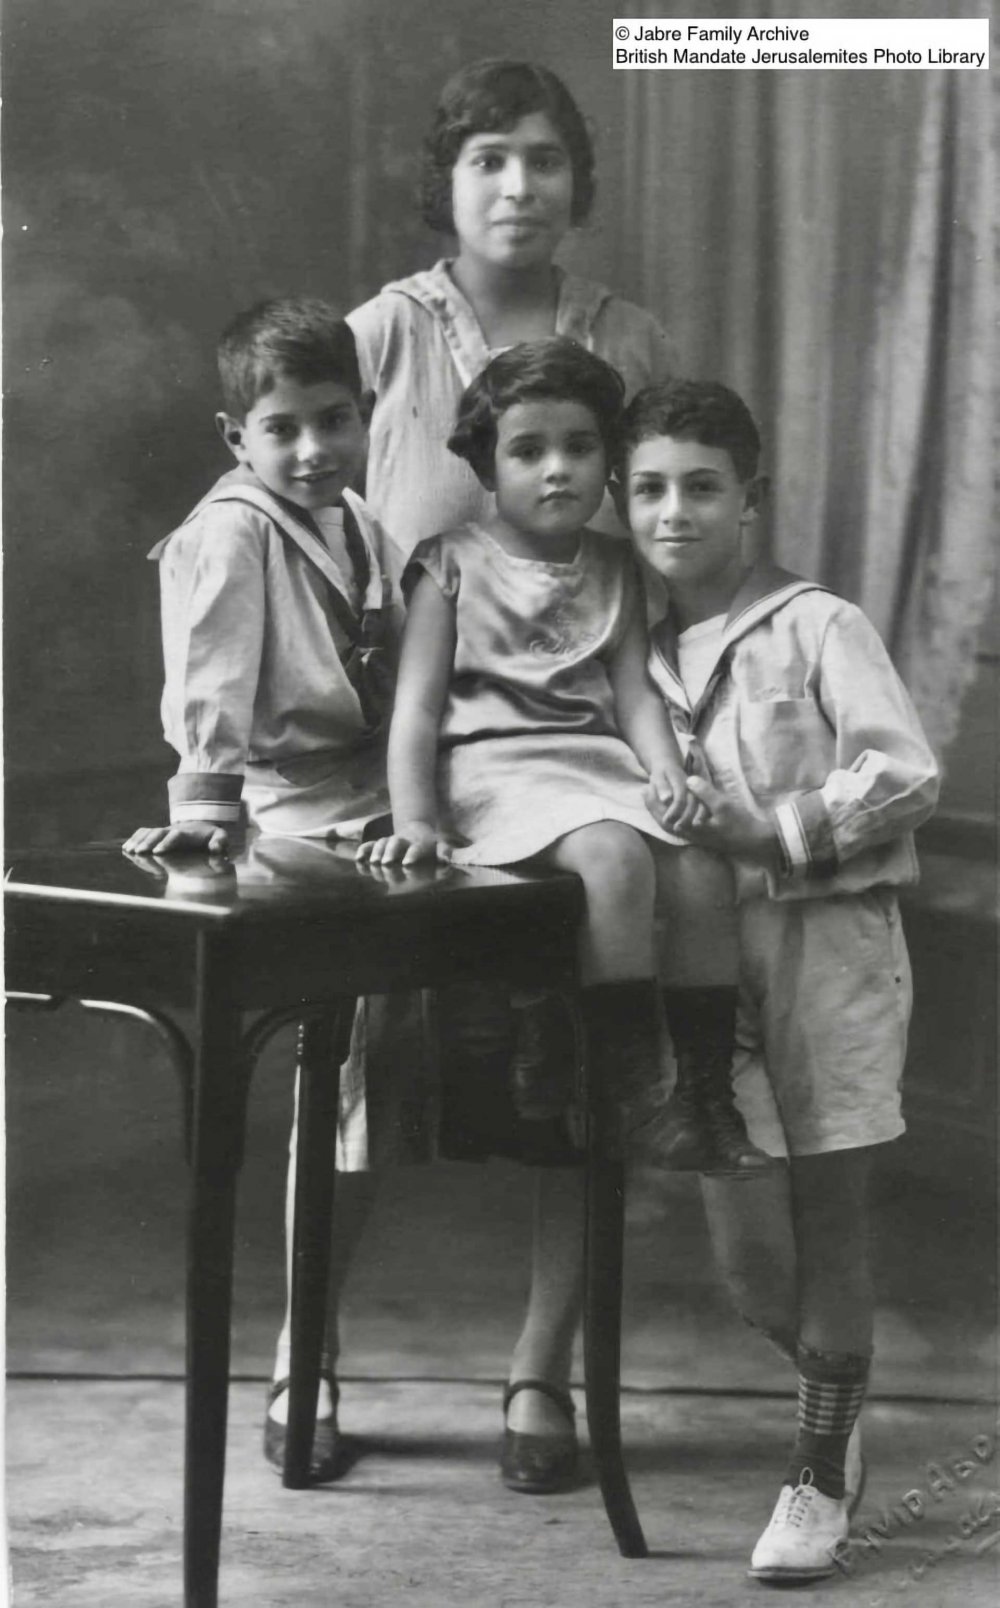 Afif, Zakia, and Daoud Jabre, a Jerusalem family, 1927